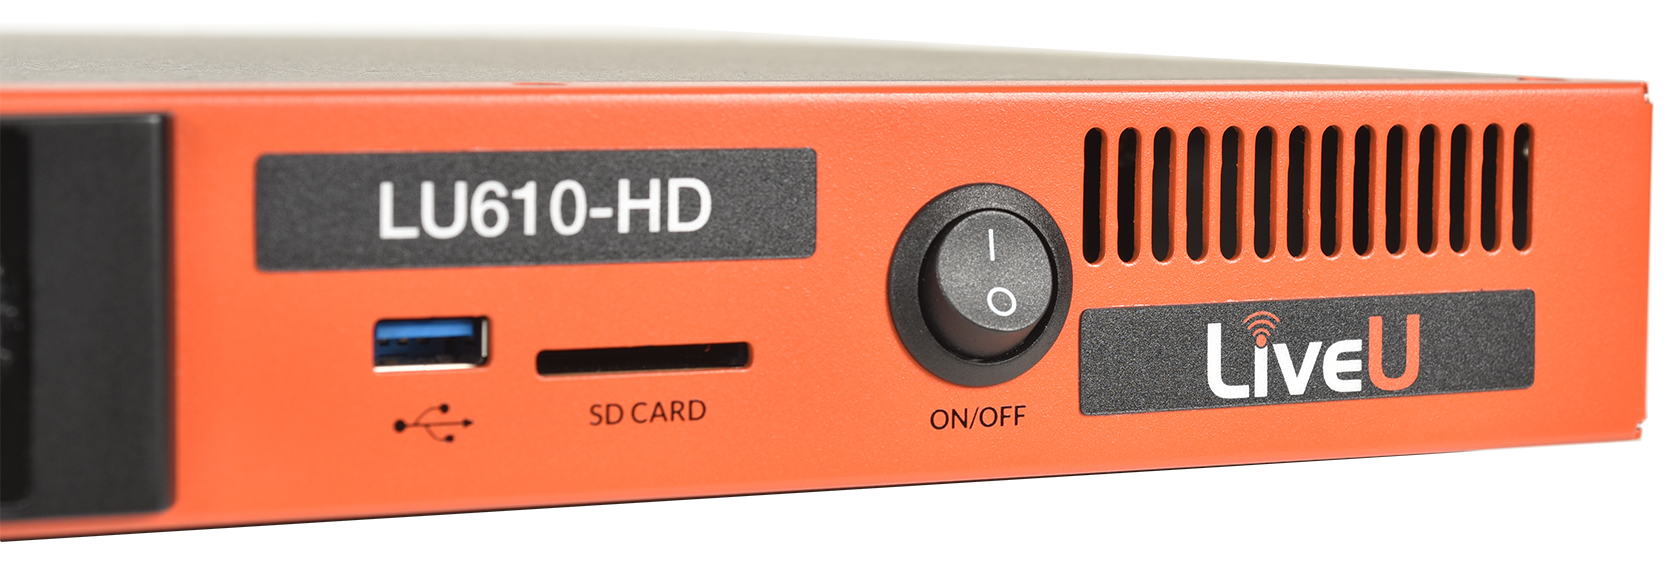 Видеостример рэковый с встроенными модемами LiveU LU610 HEVC-HD-M